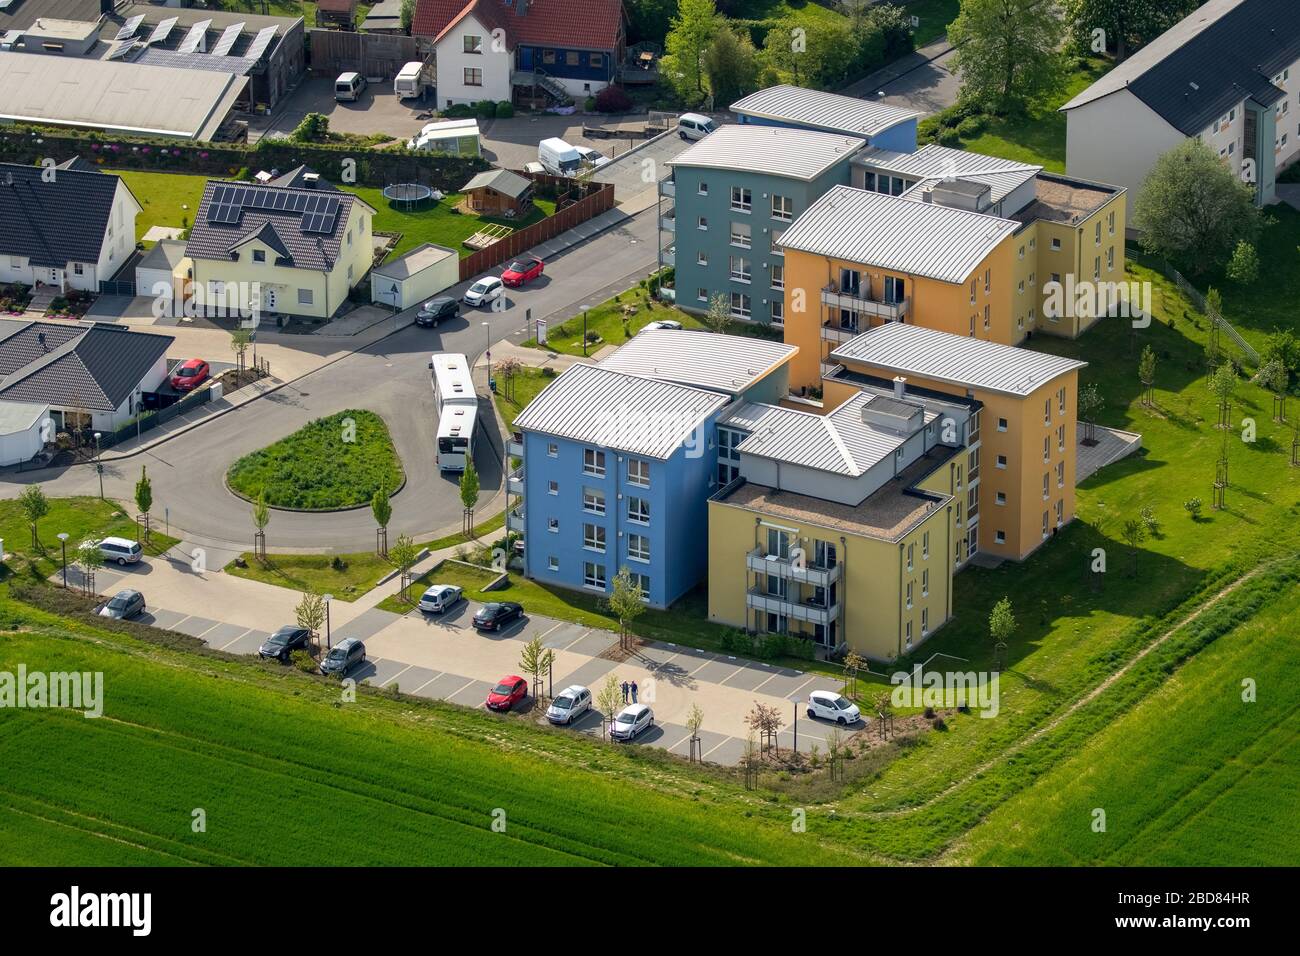 , new residental ares at Koehlerweg and Hinter den Gaerten in Hagen-Emst, 09.05.2016, aerial view, Germany, North Rhine-Westphalia, Ruhr Area, Hagen Stock Photo